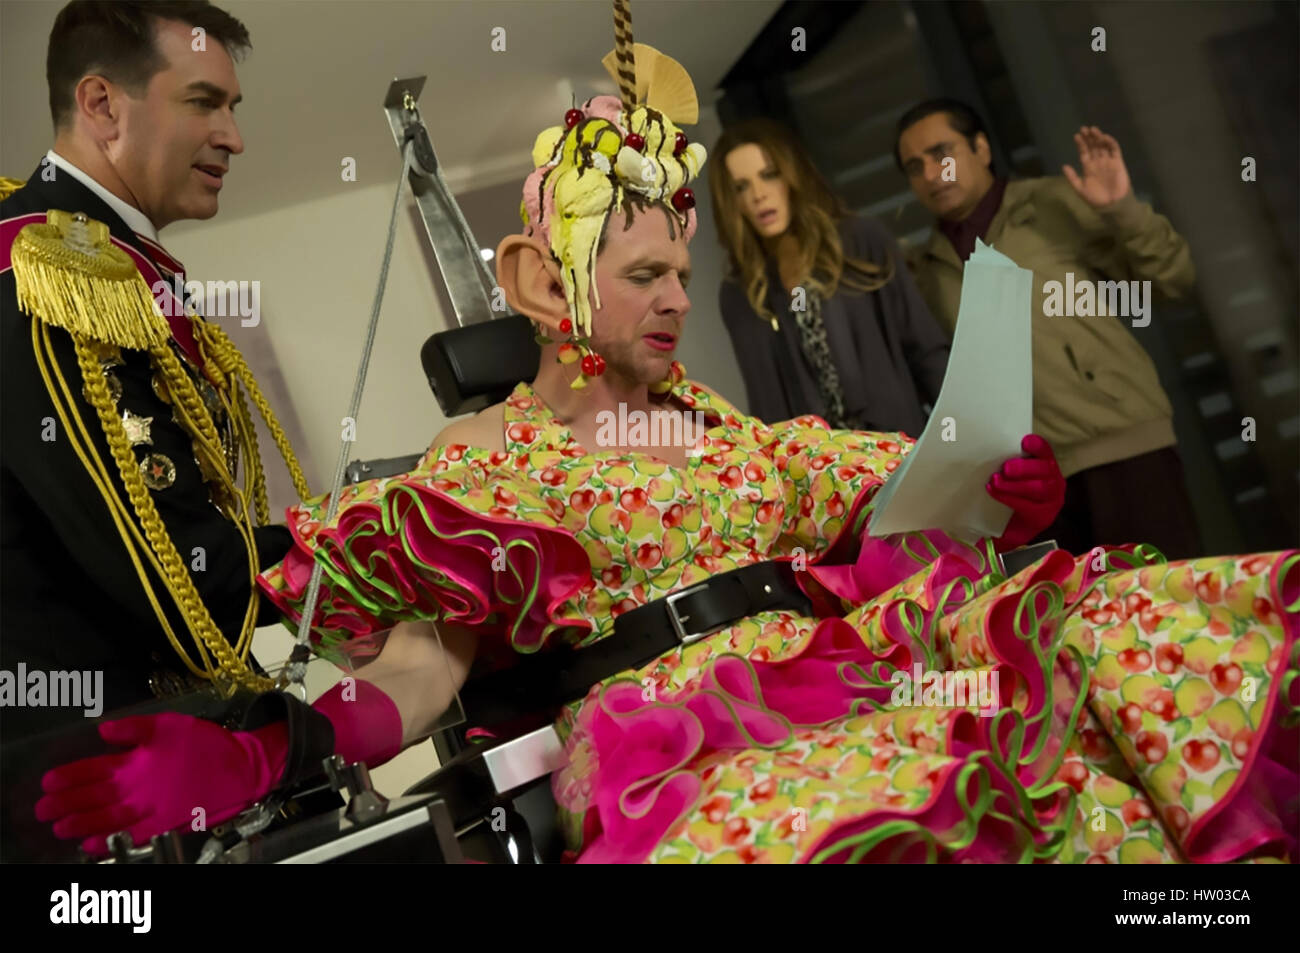 ABSOLUT nichts 2015 GFM Films Produktion mit Simon Pegg in Kostüm und Kate Beckinsale im Hintergrund Stockfoto